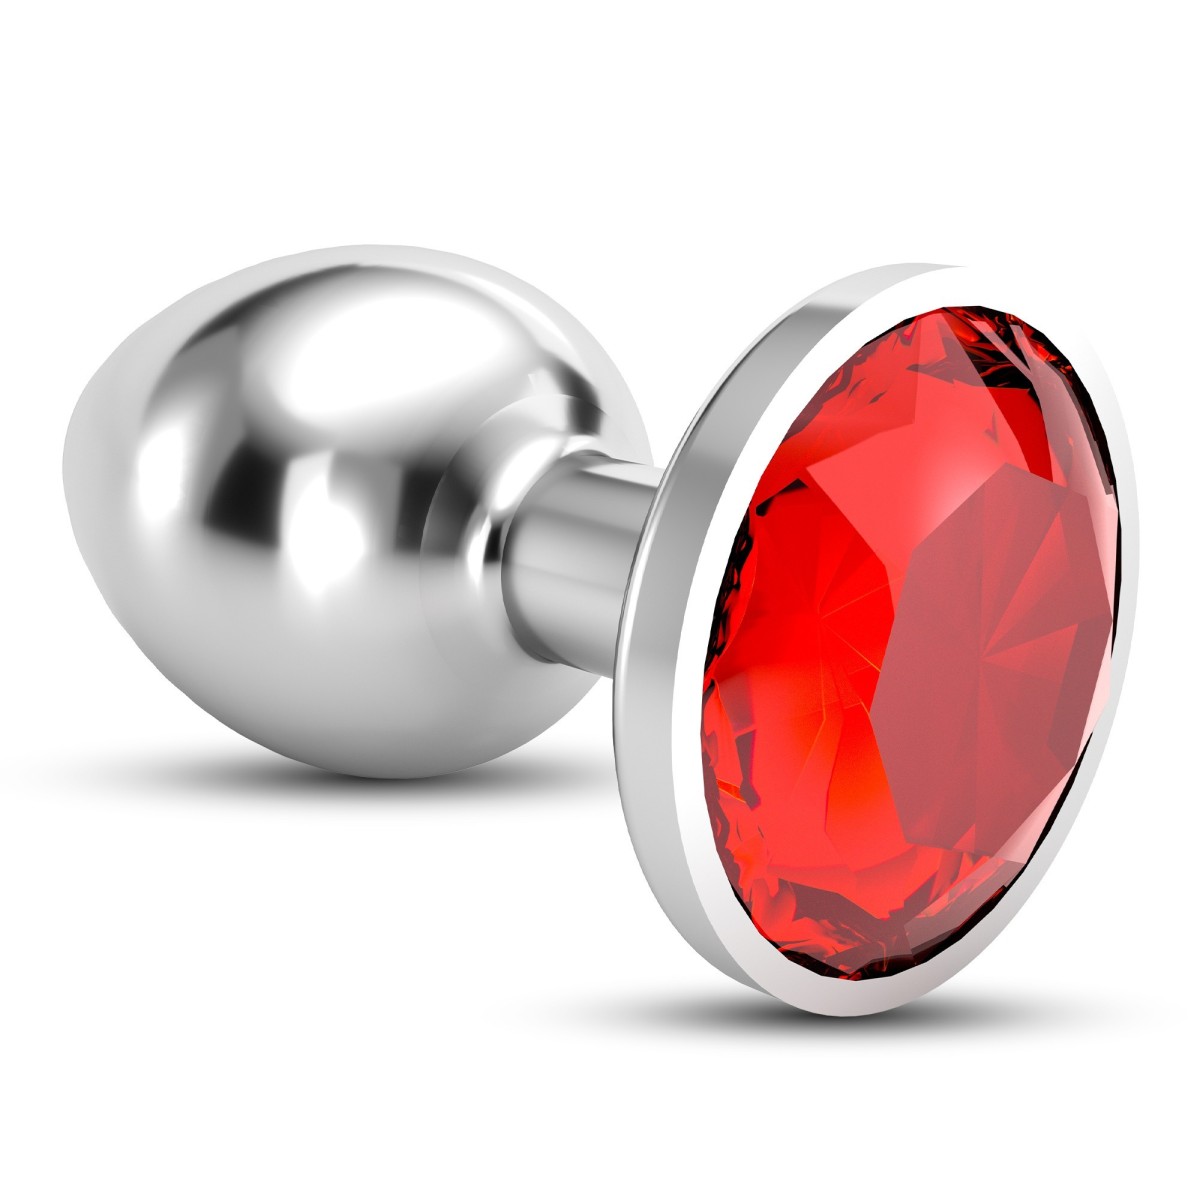 Análny šperk Crushious Bijou stredný červený, kovový análny kolík 8,2 x 3,4 cm